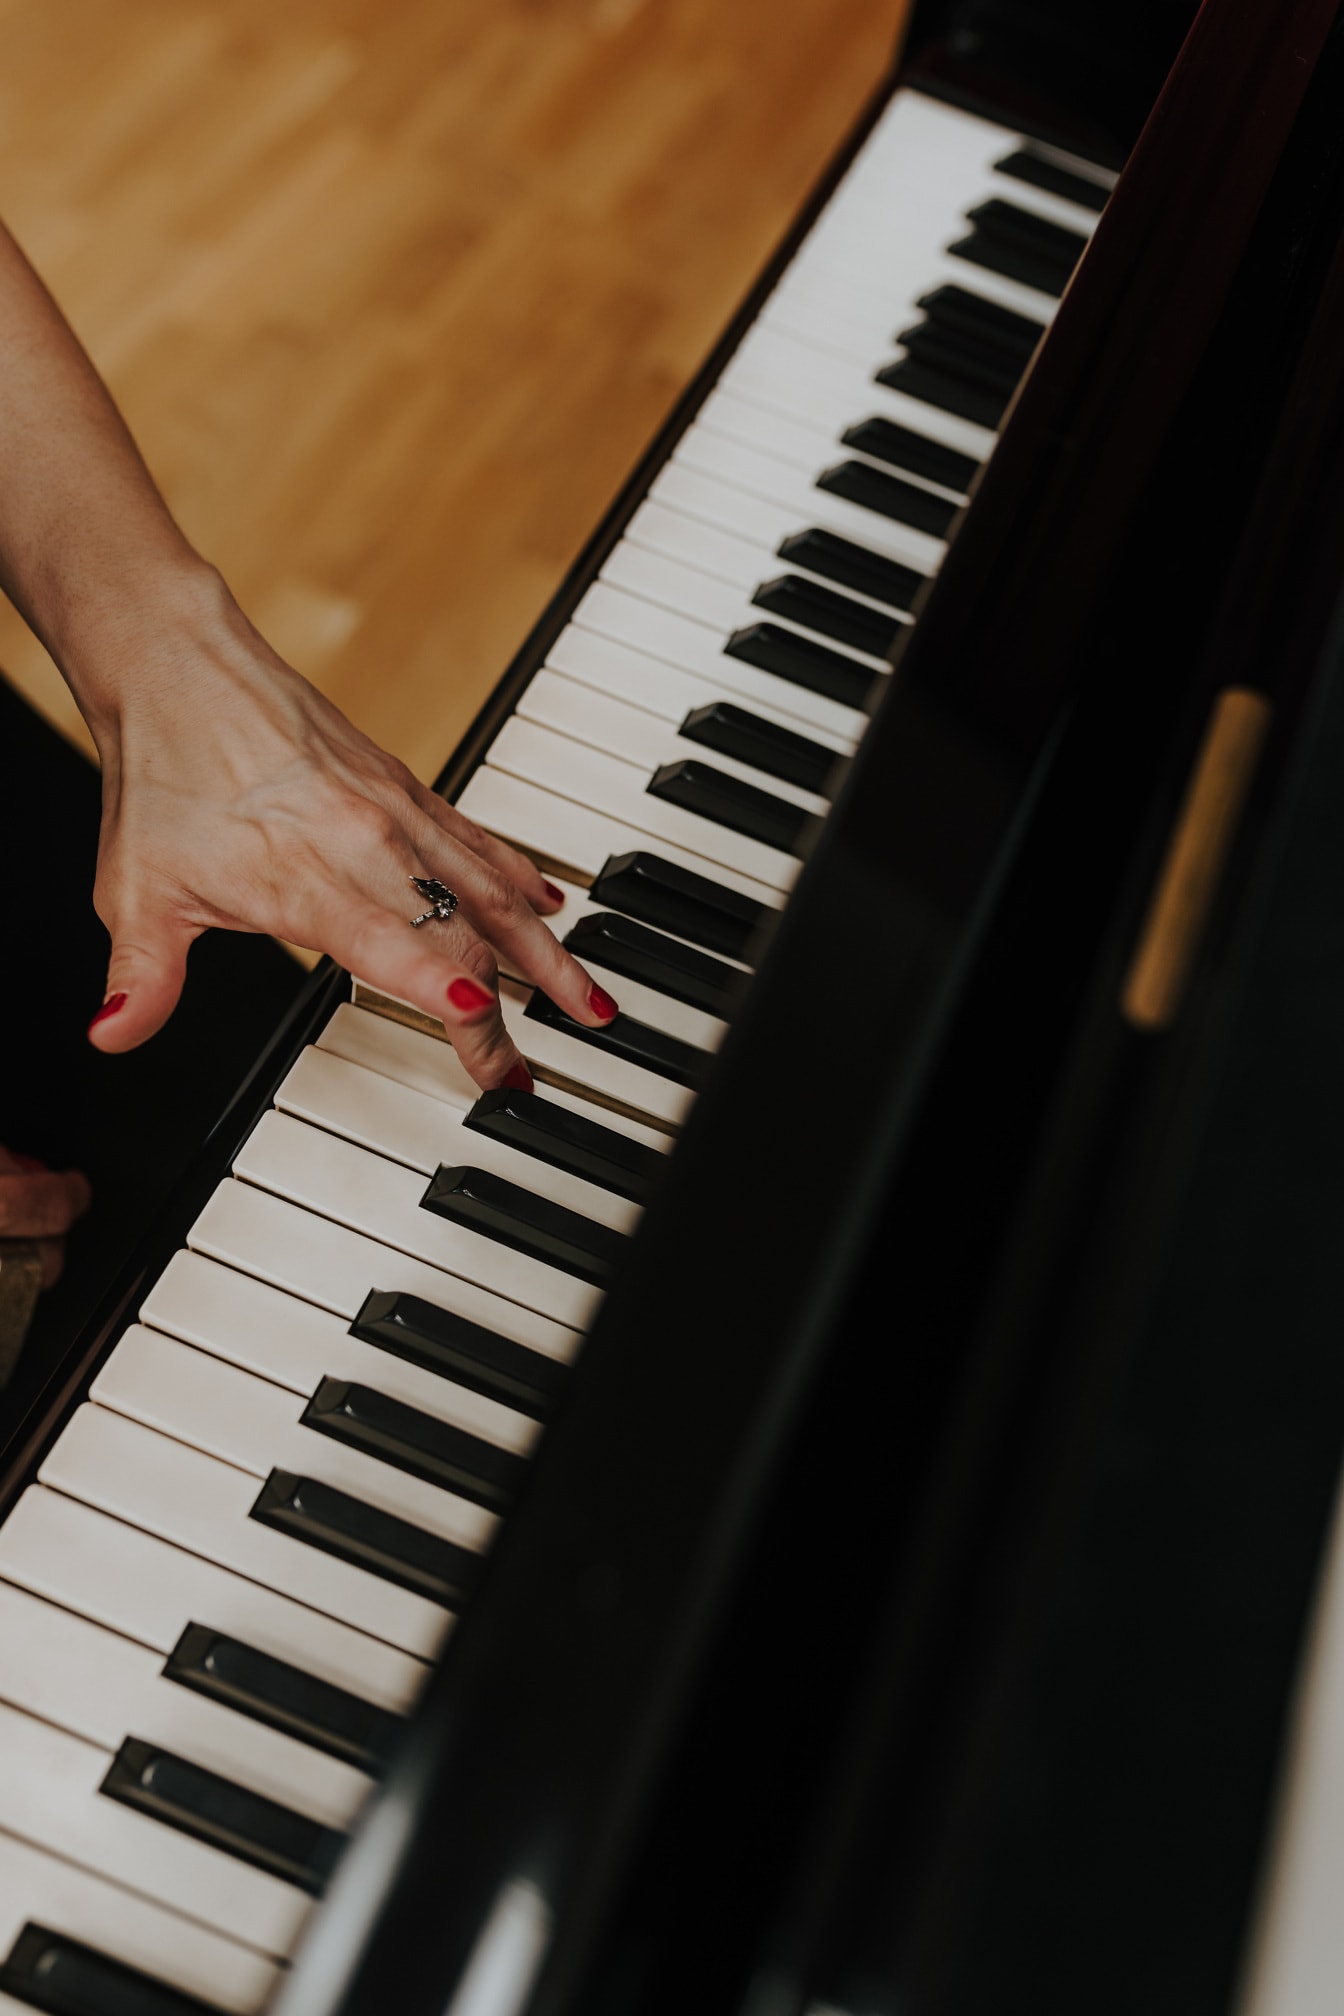 Kvinna som spelar piano närbild av rött nagellack på fingrar